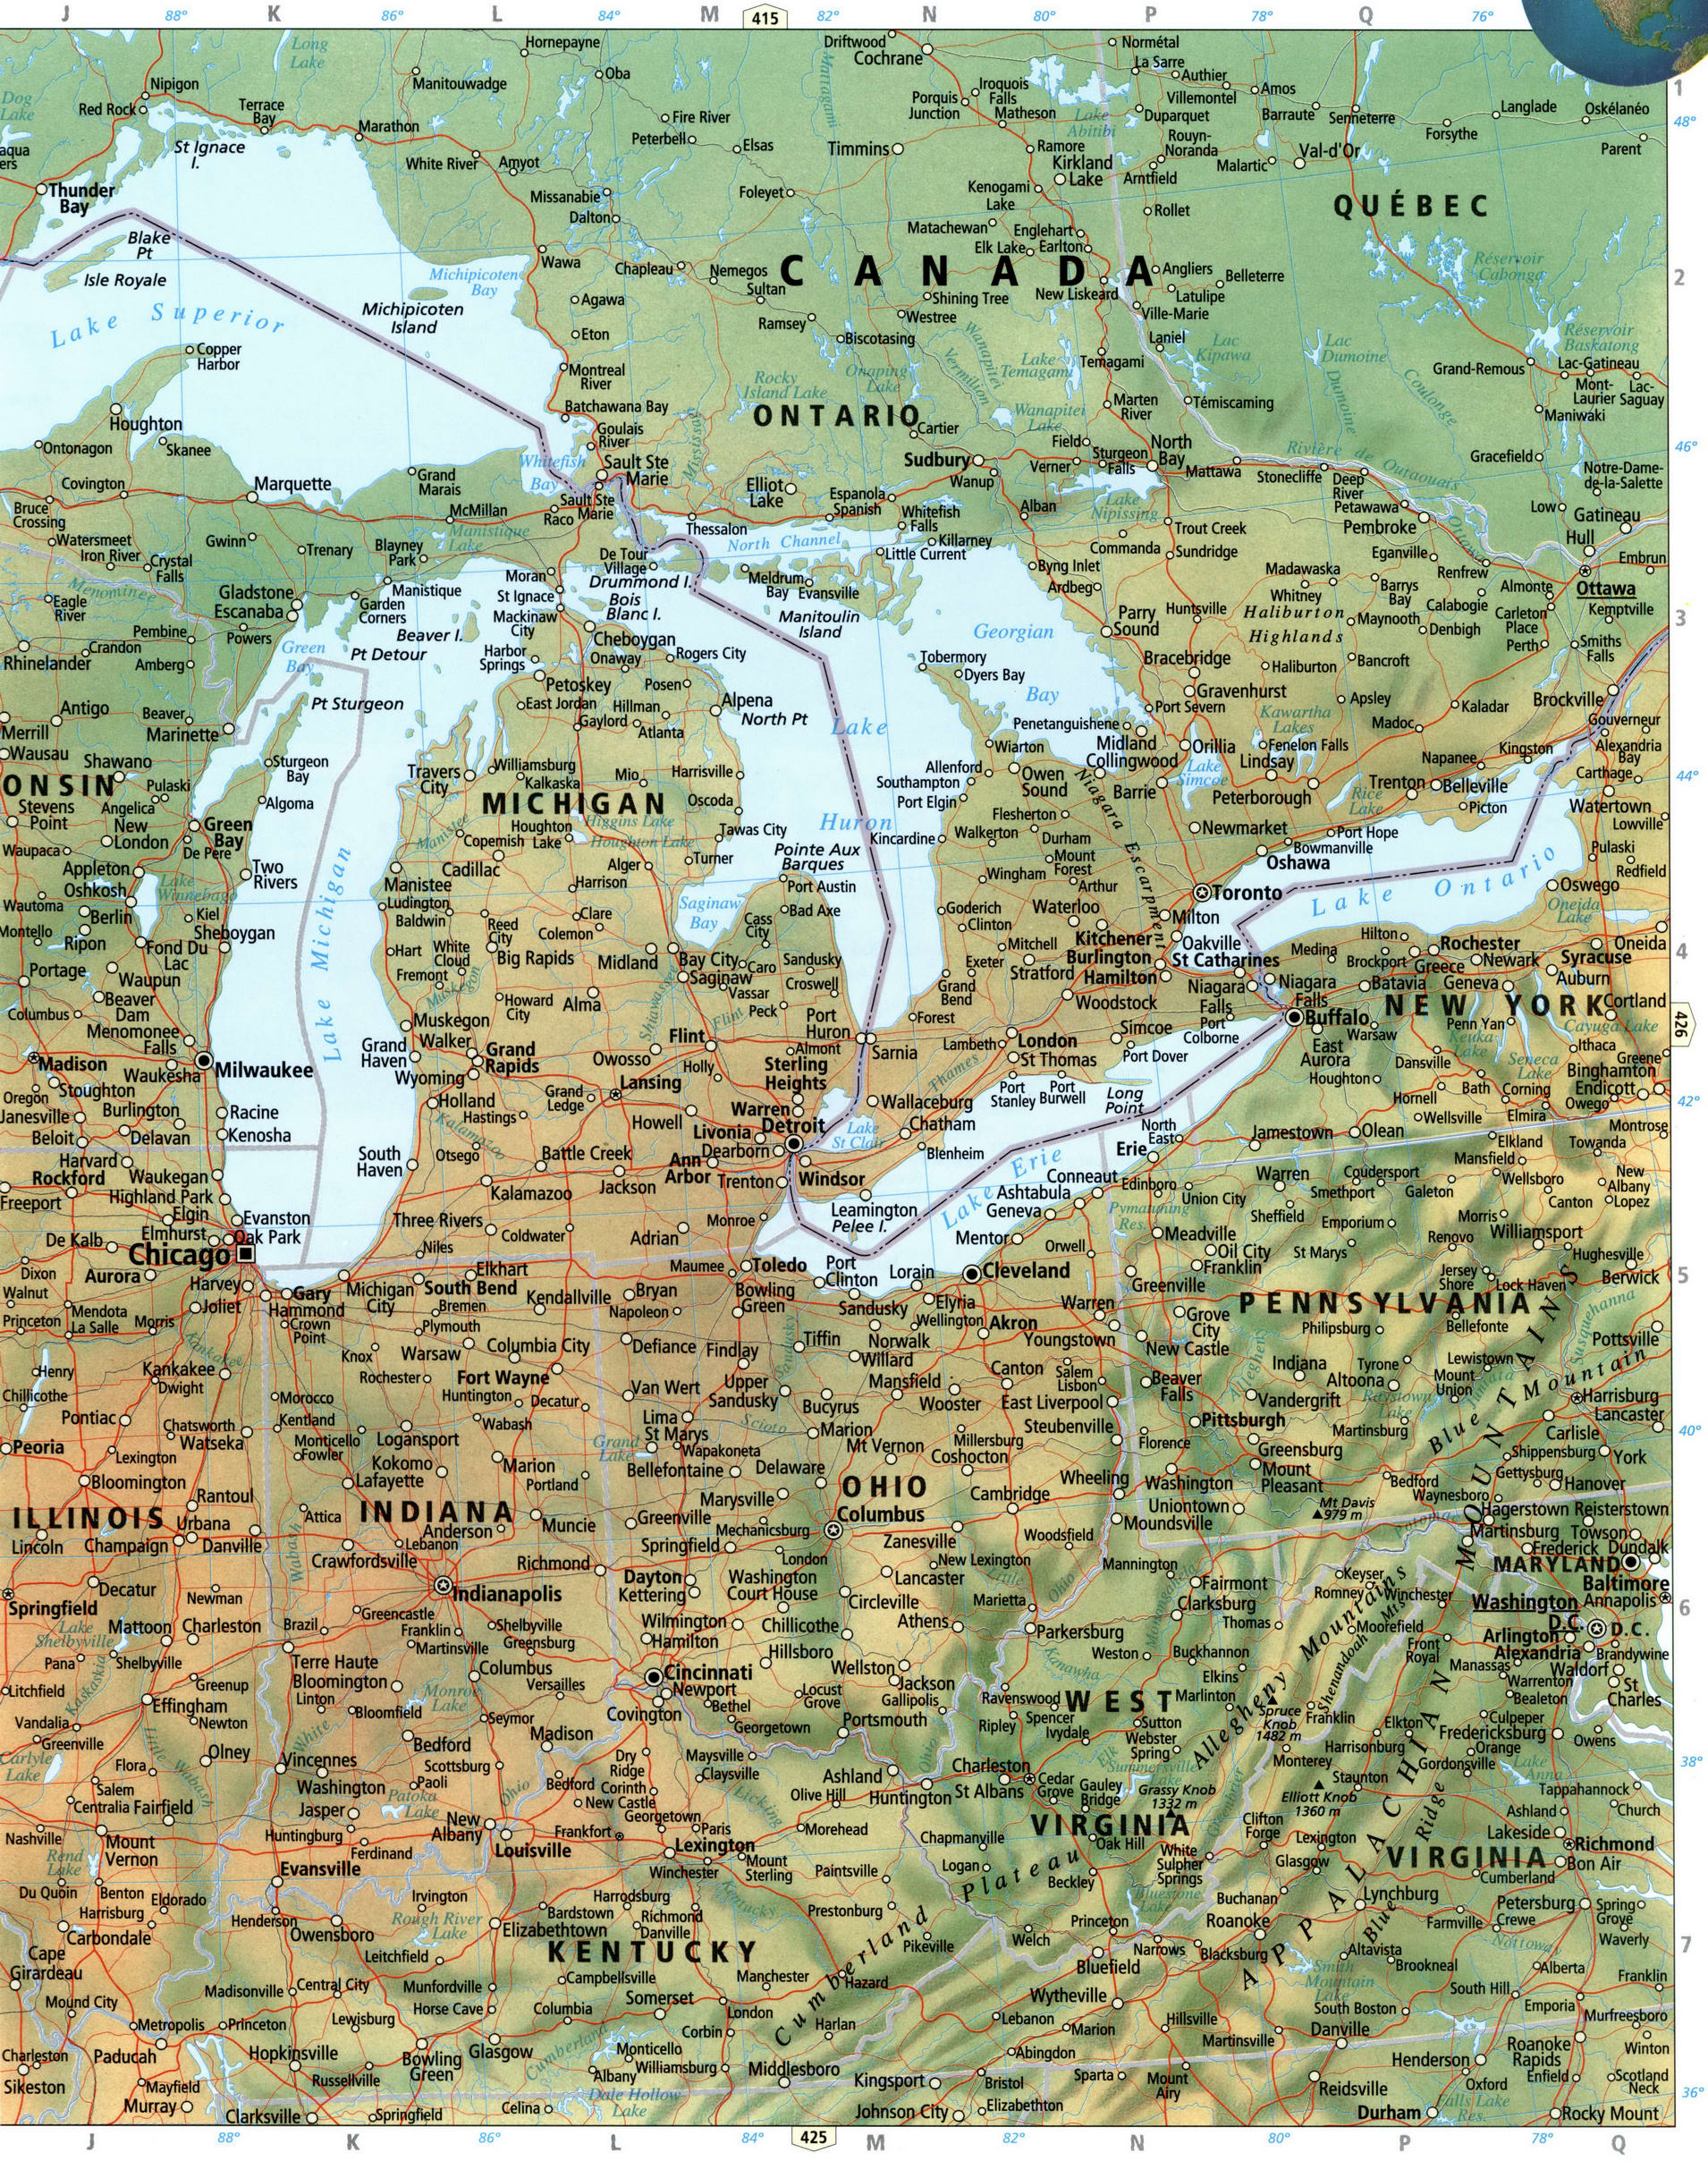 Центральная часть США - Мичиган и Иллинойс